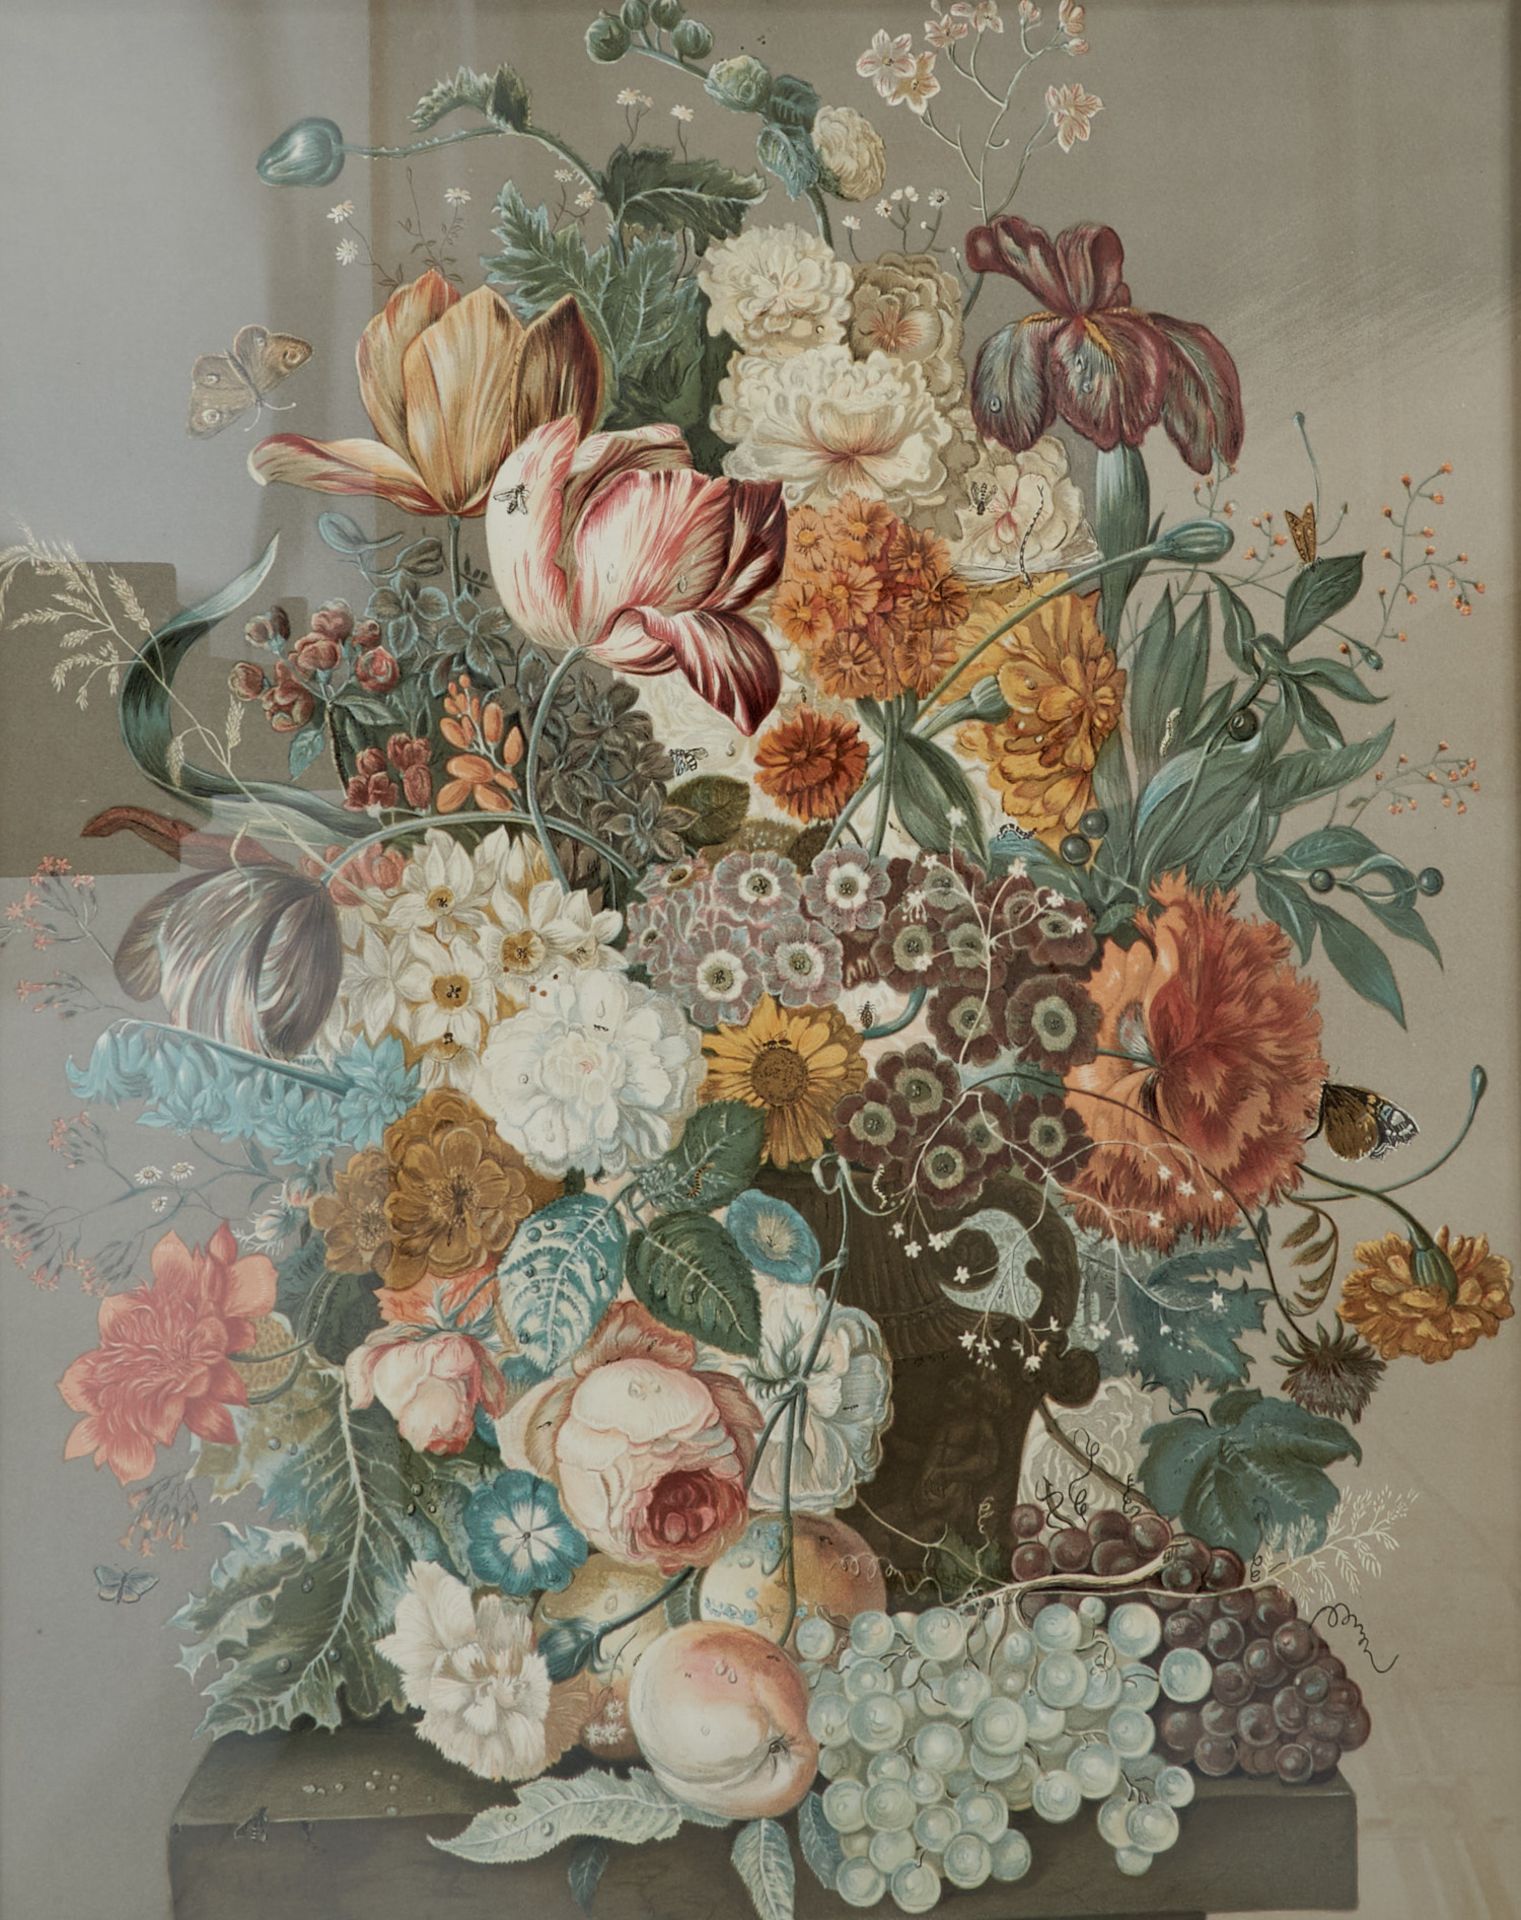 Flora Blumen - Blumenbouquet mit Trauben und Schmetterlingen. Farblithographie nach J. Nigg, um